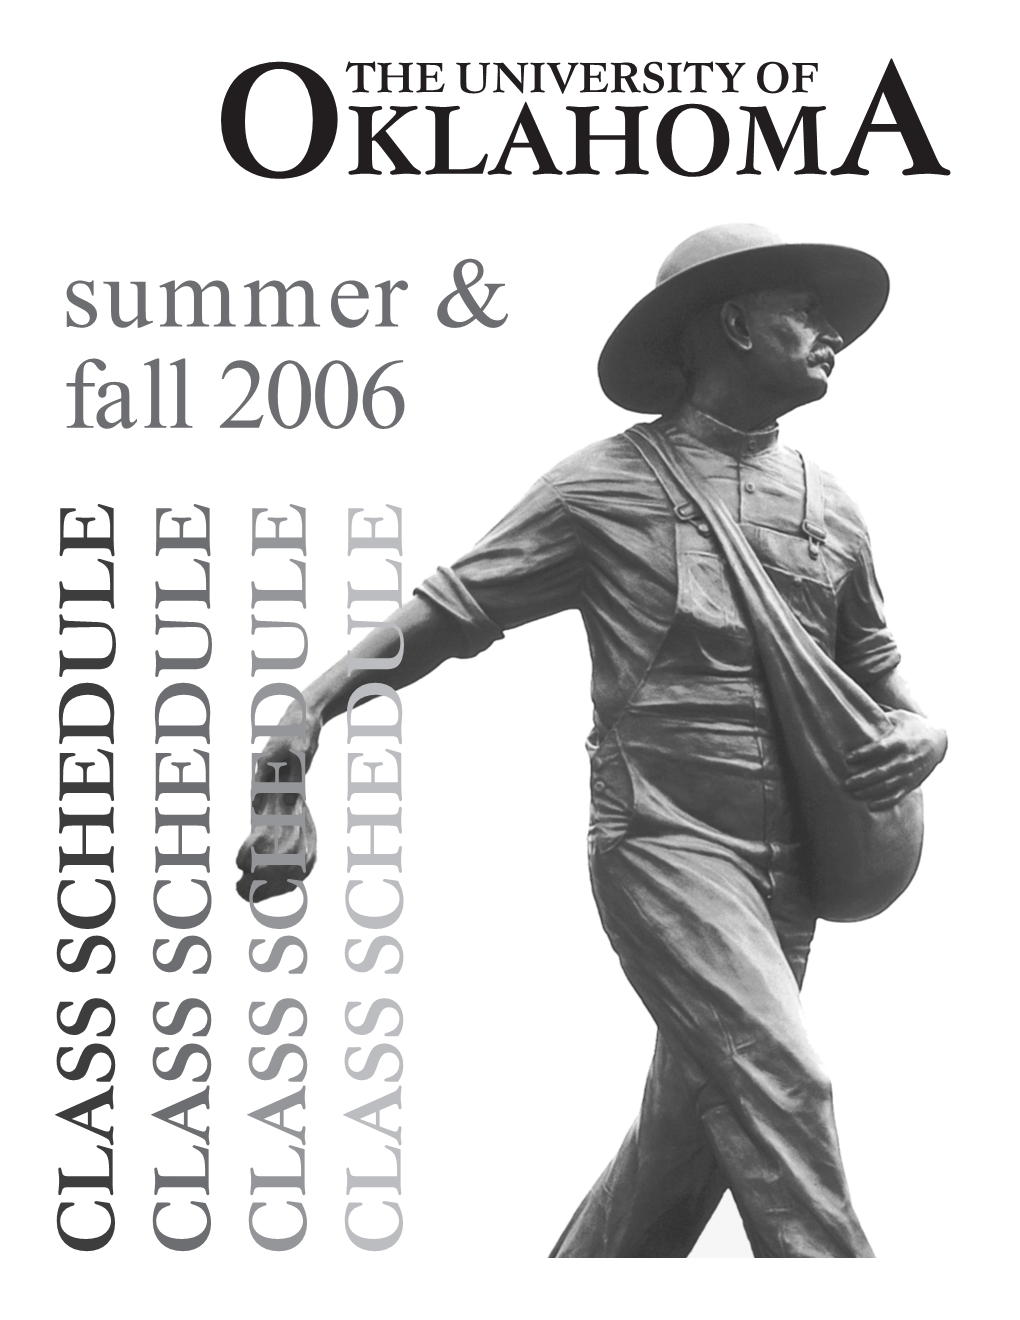 KLAHOM Summer & Fall 2006